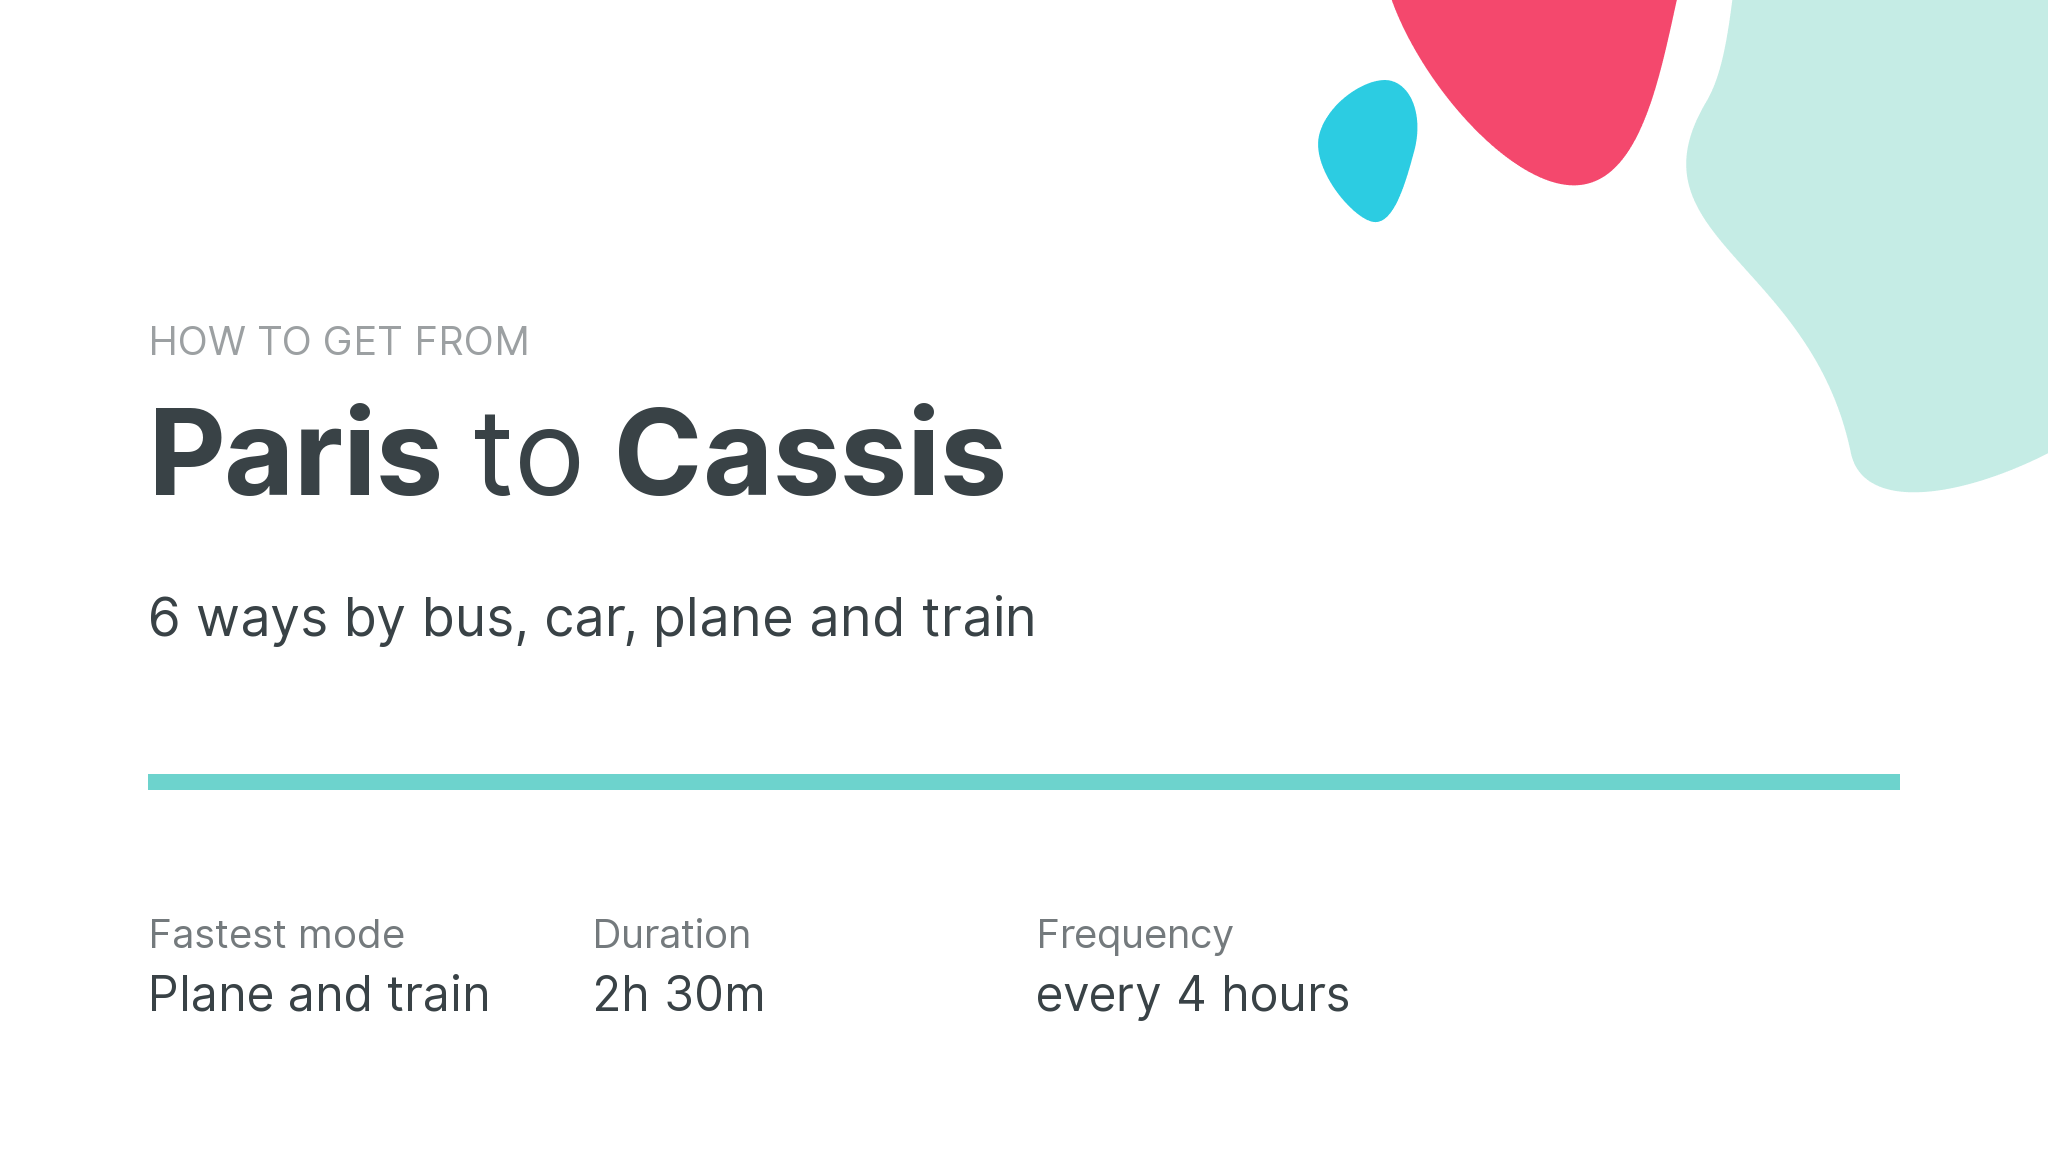 How do I get from Paris to Cassis